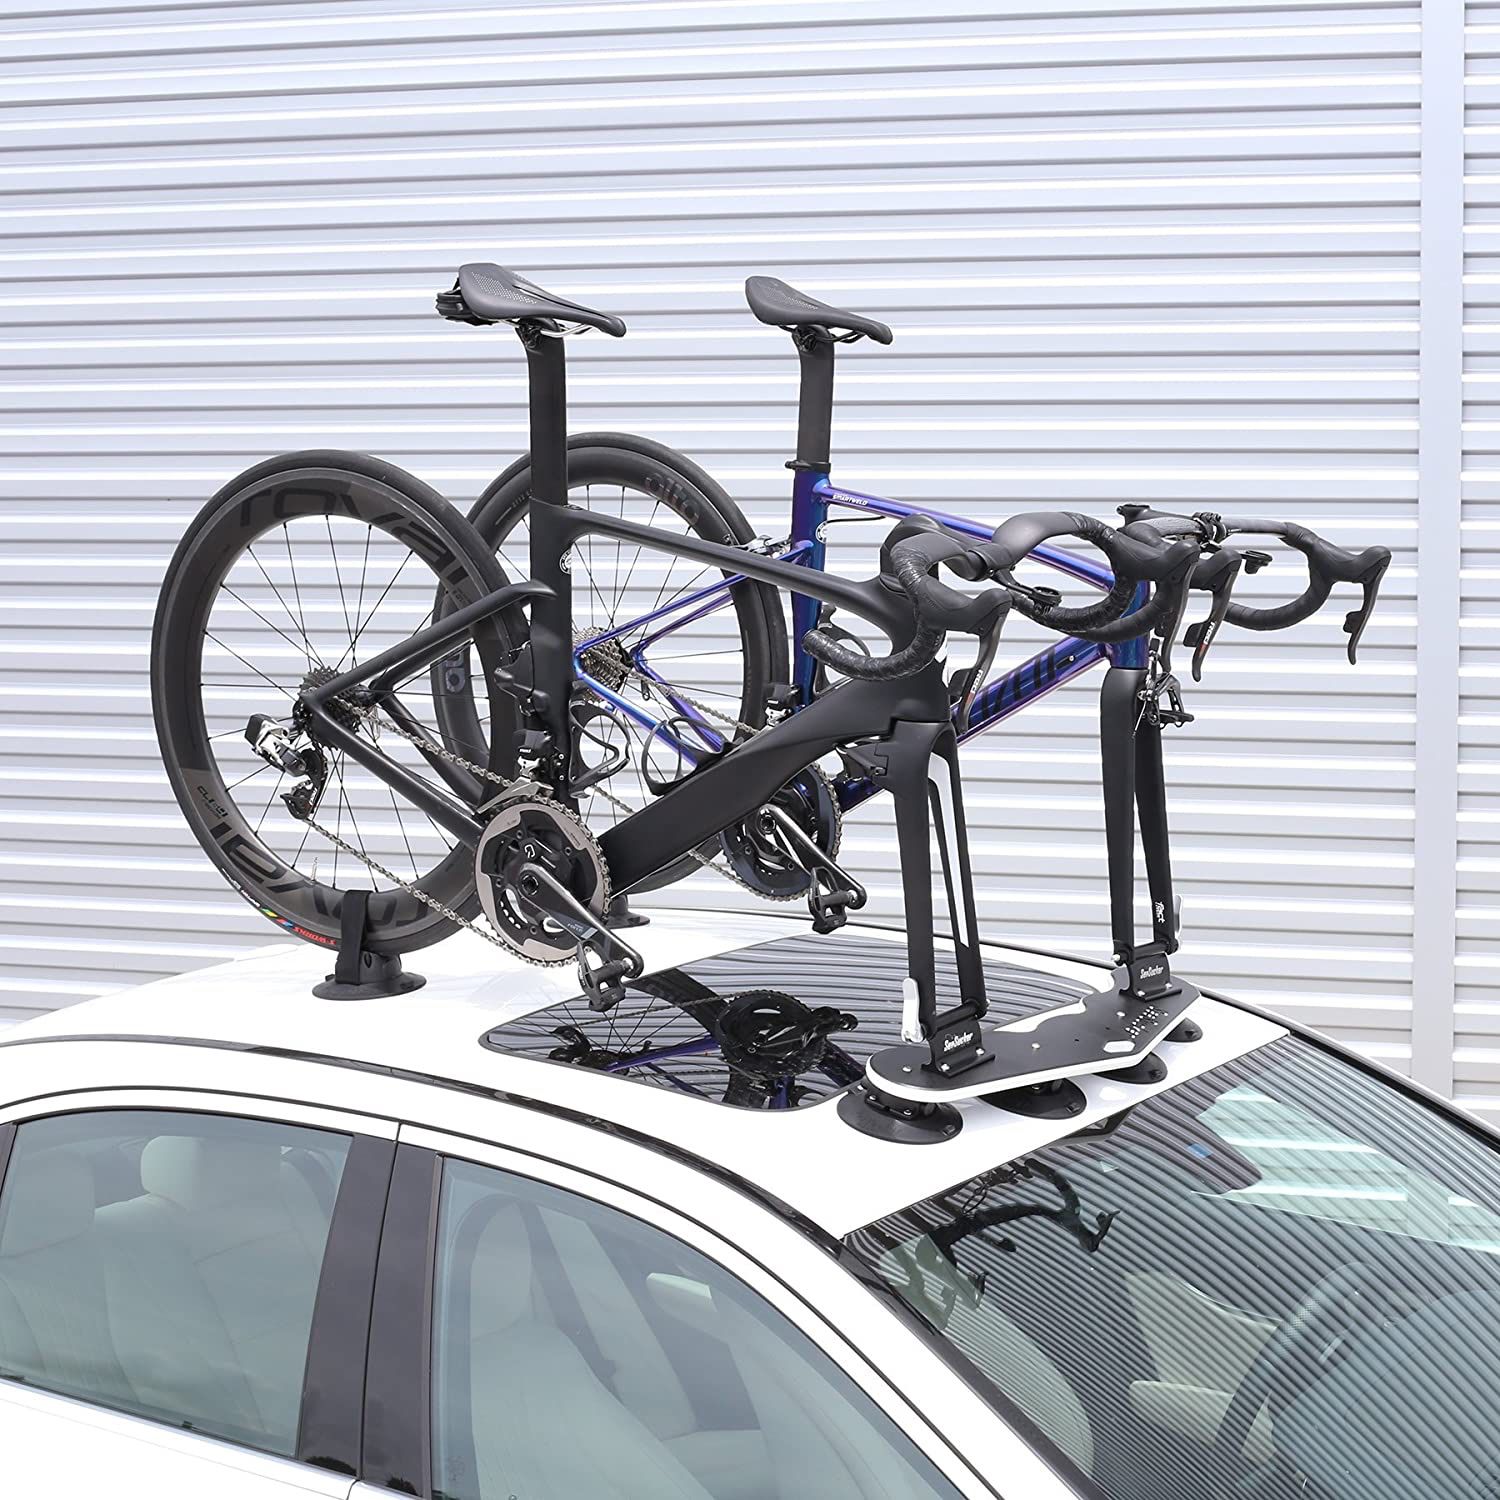 SeaSucker 2 bike rack